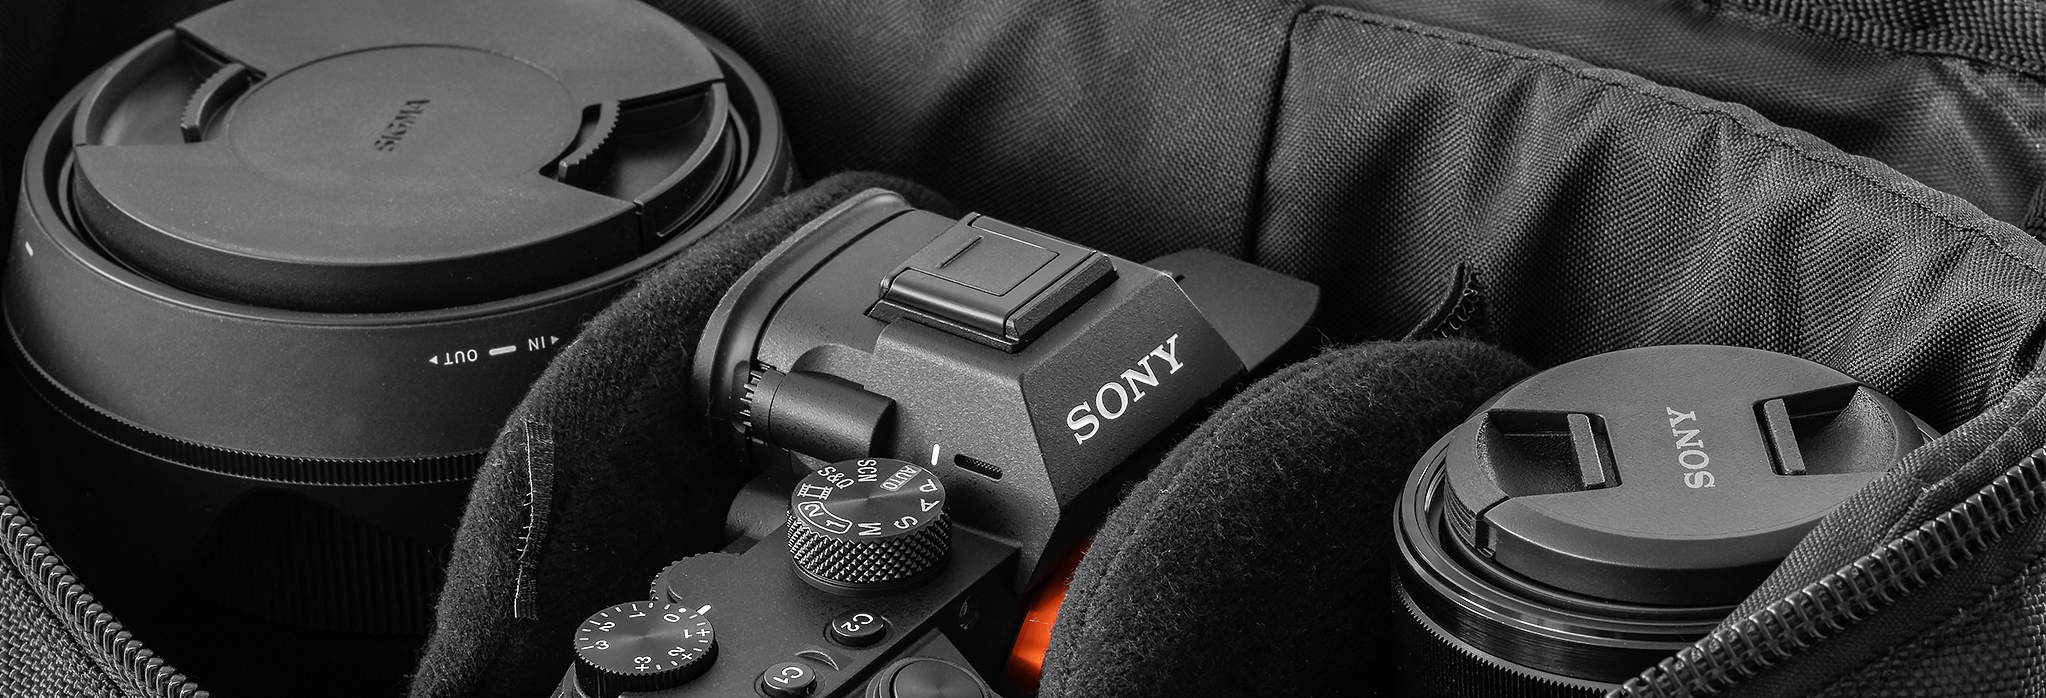 Sony-Kamera mit zwei Wechsel-Objektiven in der Fototasche